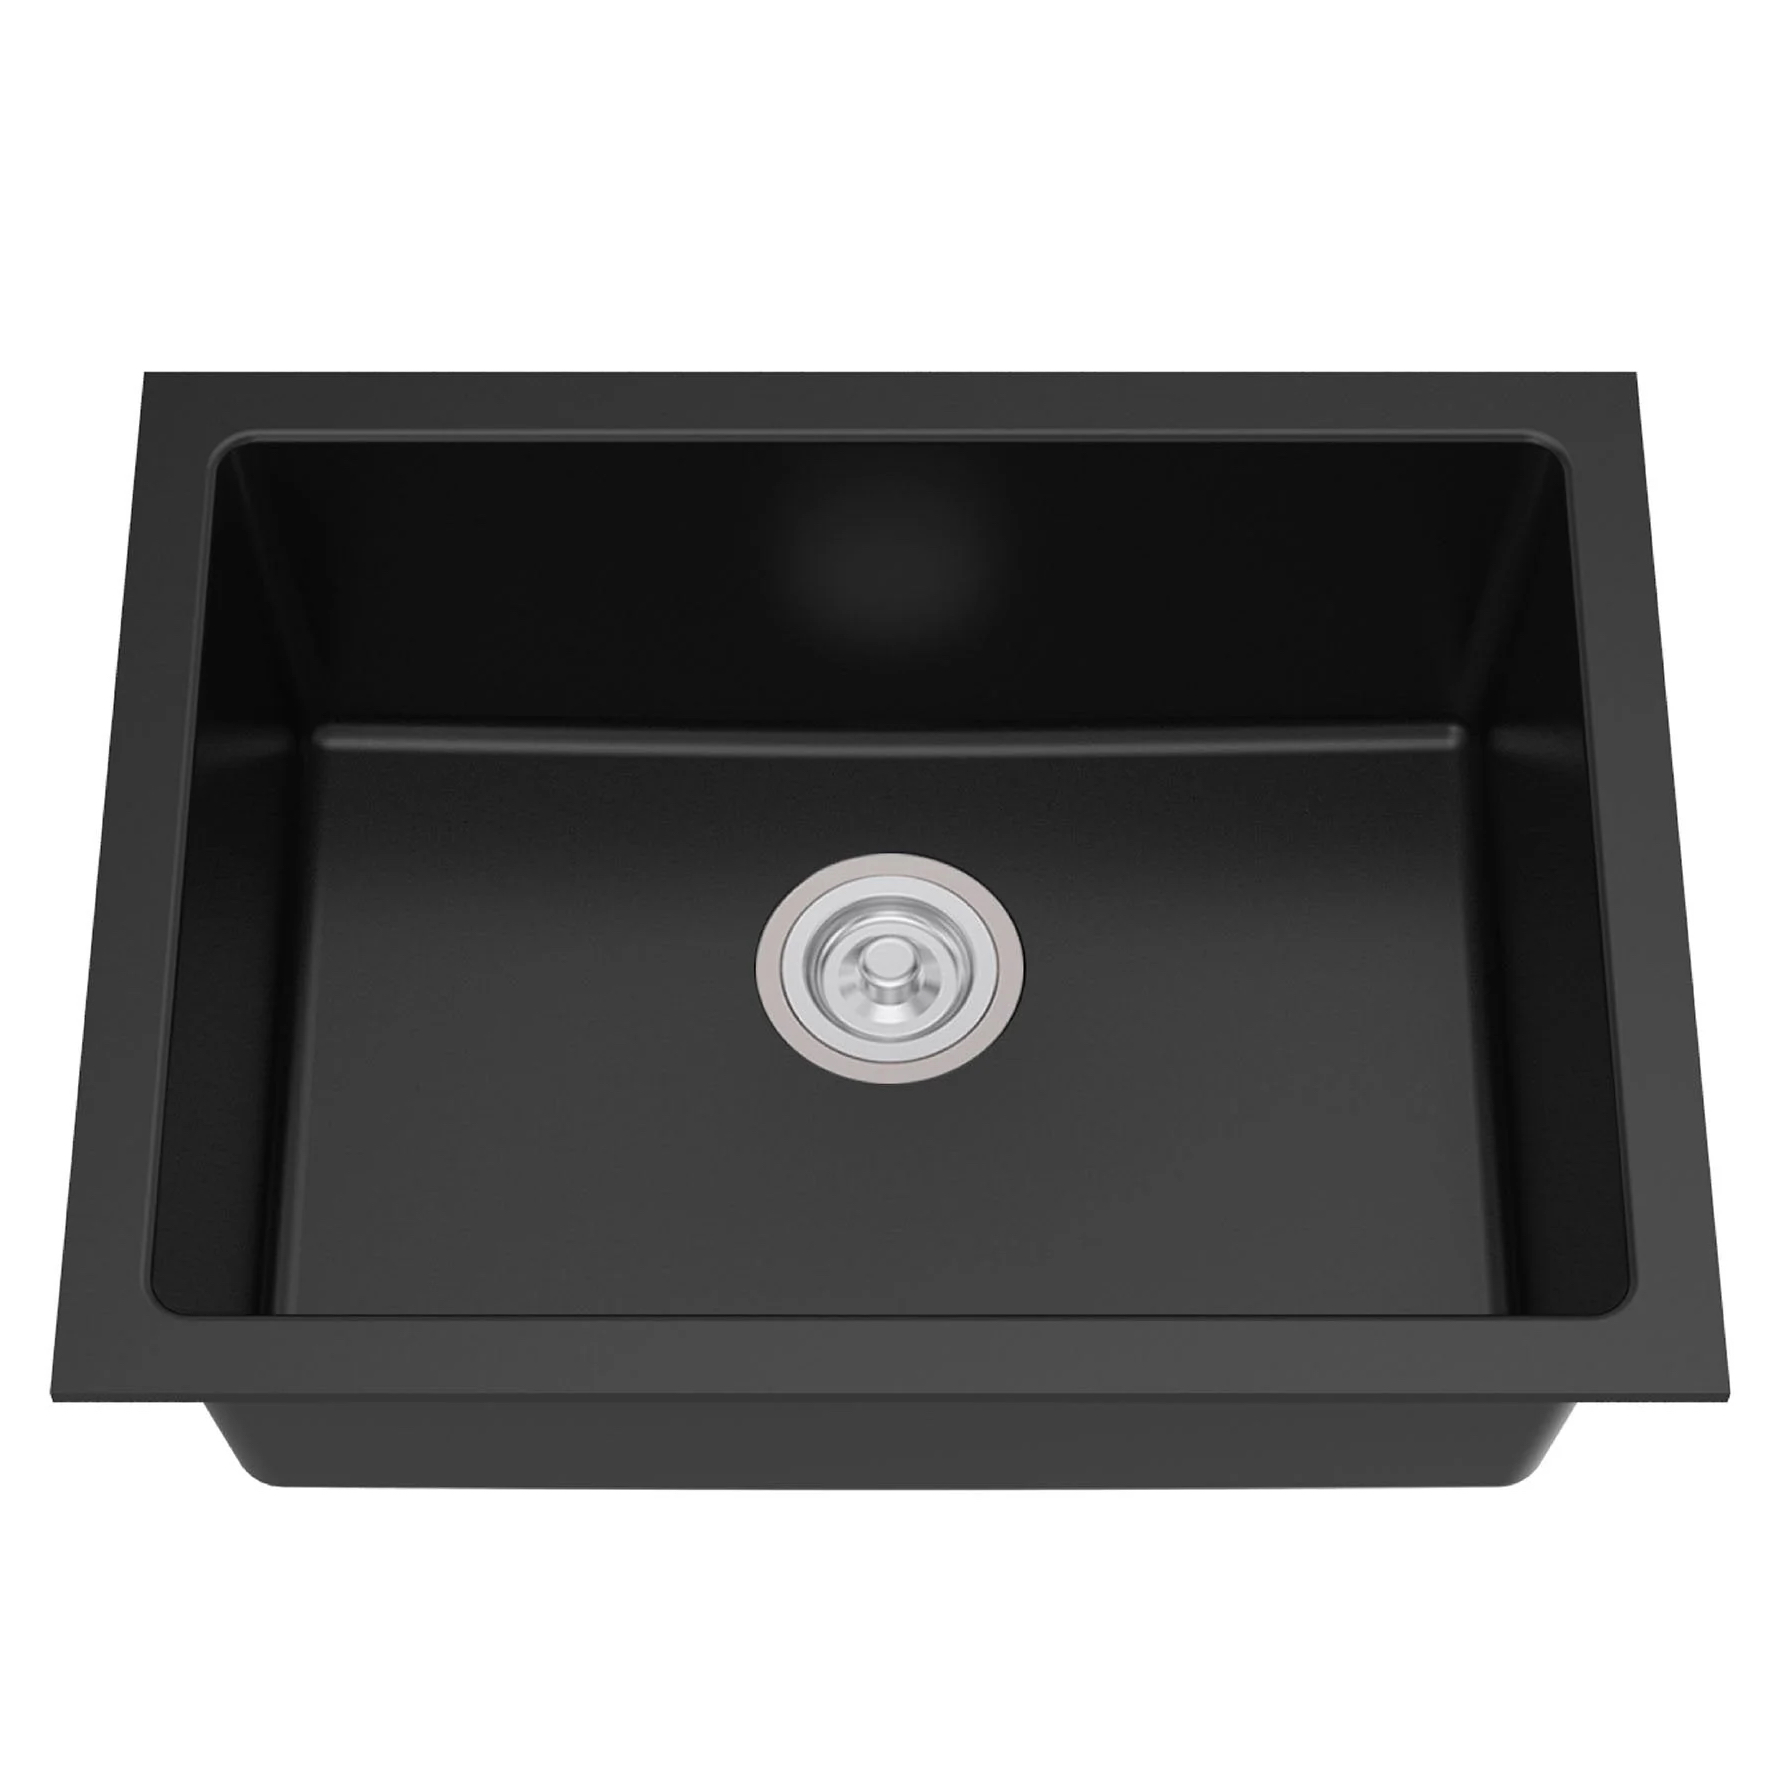 Wastafel dapur RINOKS granite kitchen sink single bowl GSB-6842